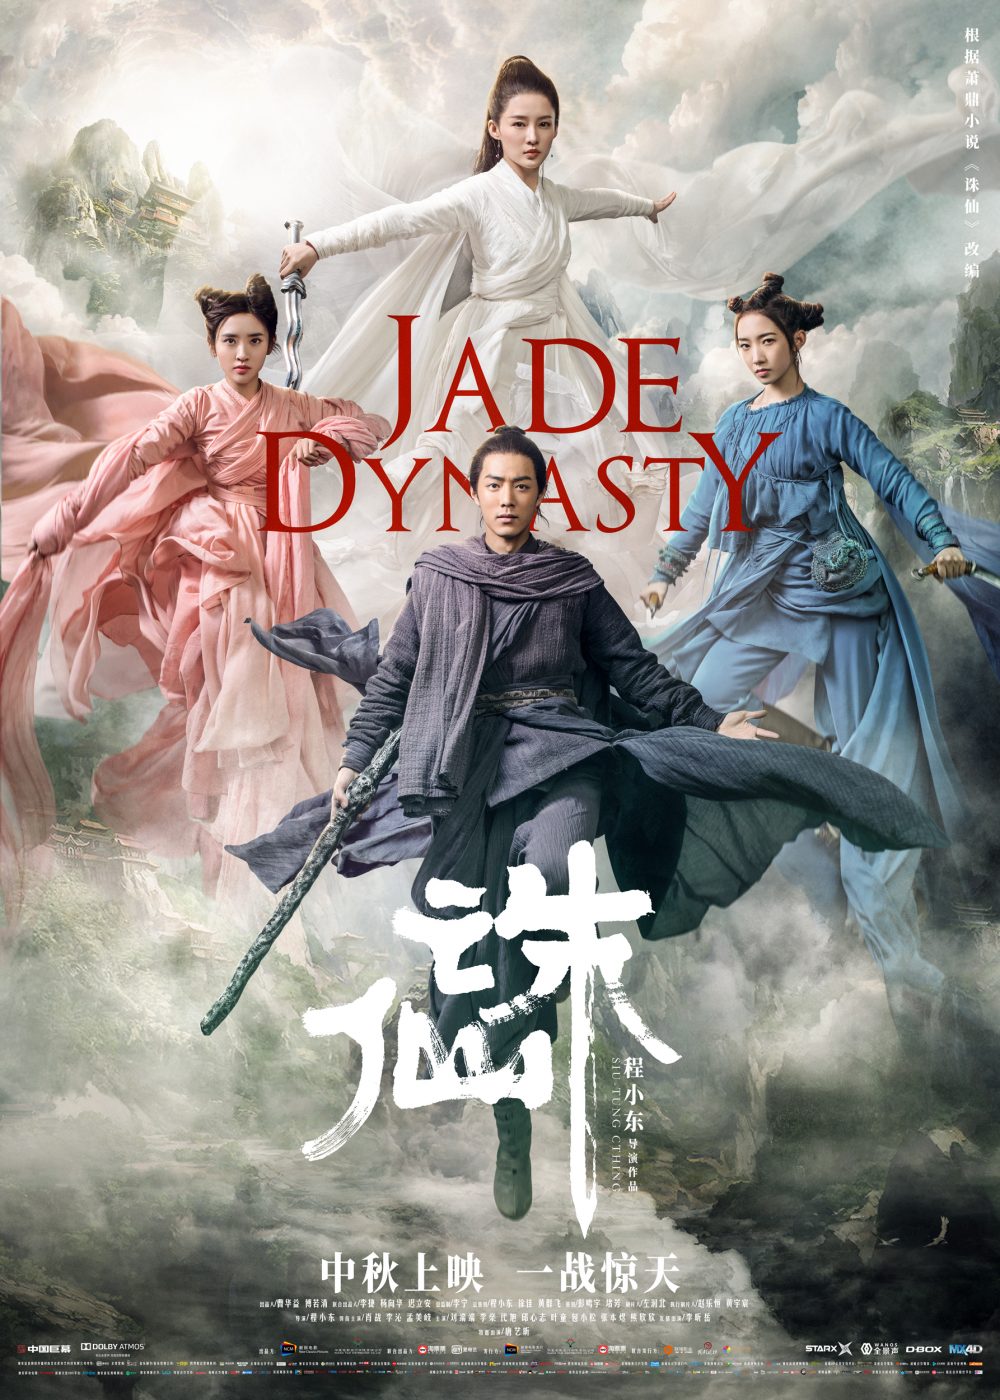 Phim hoặc của Tiêu Chiến: Tru tiên - Jade dynasty (2016)